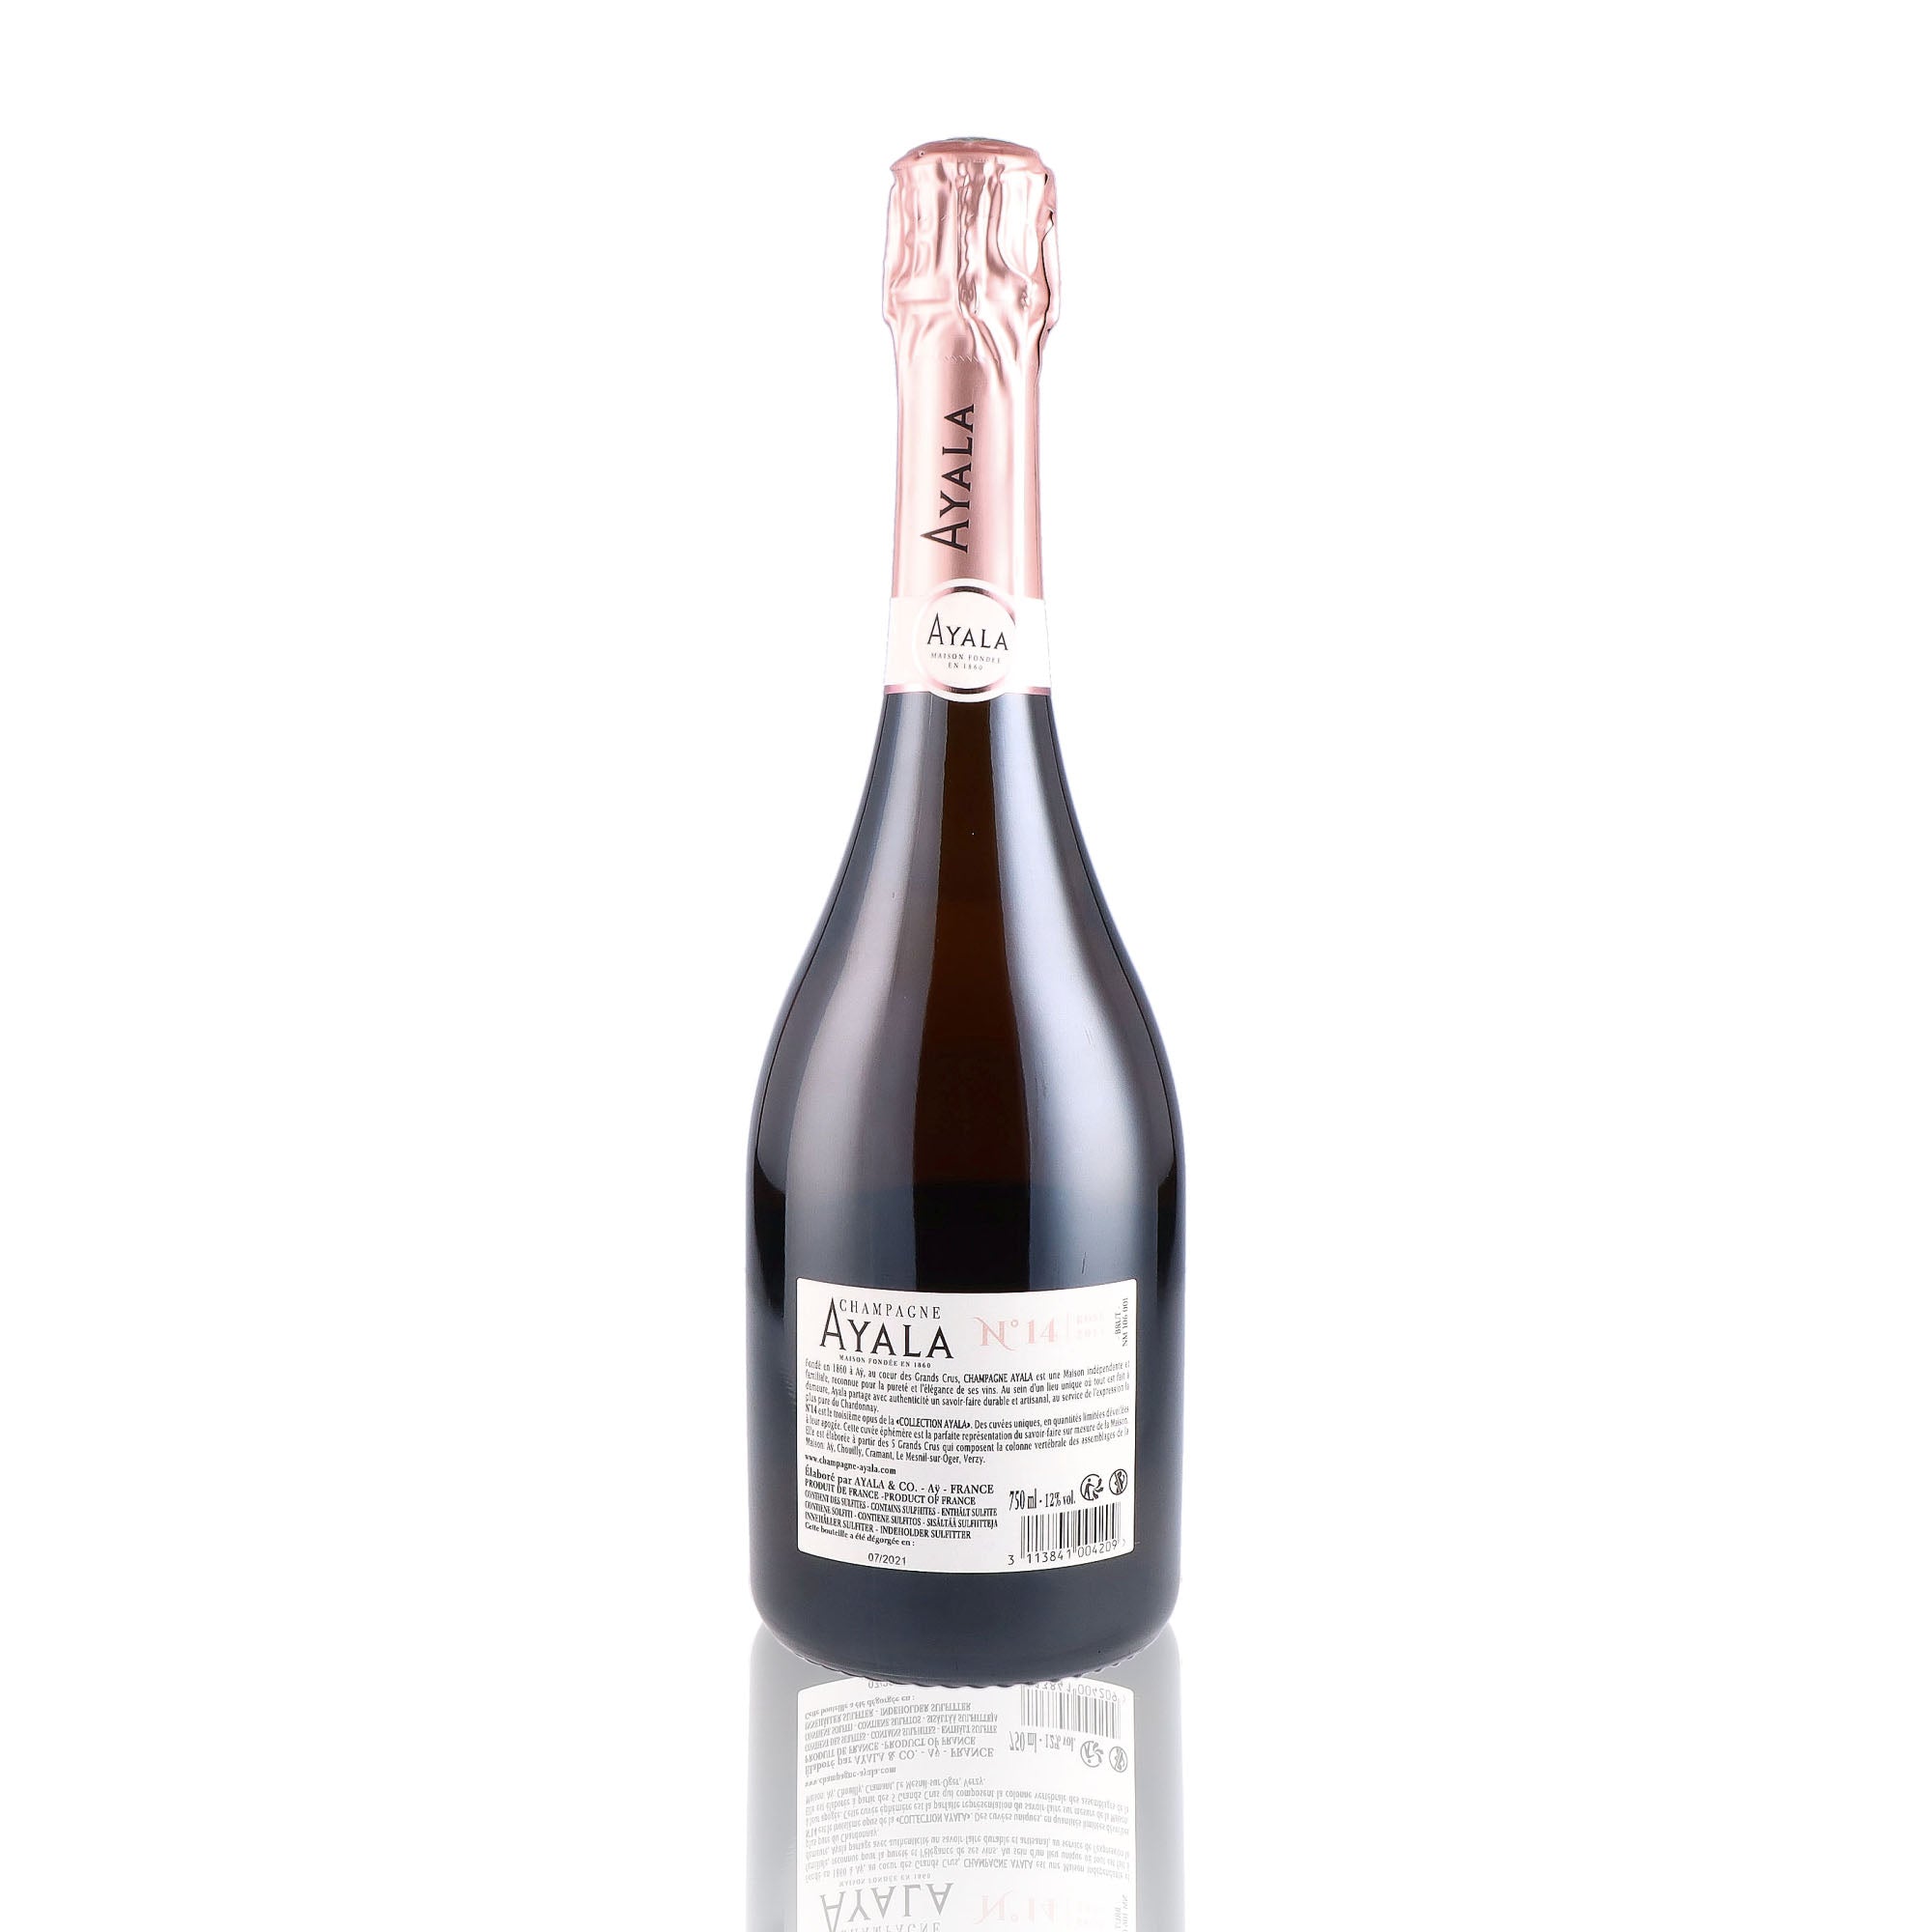 Une bouteille de champagne de la marque Ayala, de type rosé, nommée cuvée N°14.